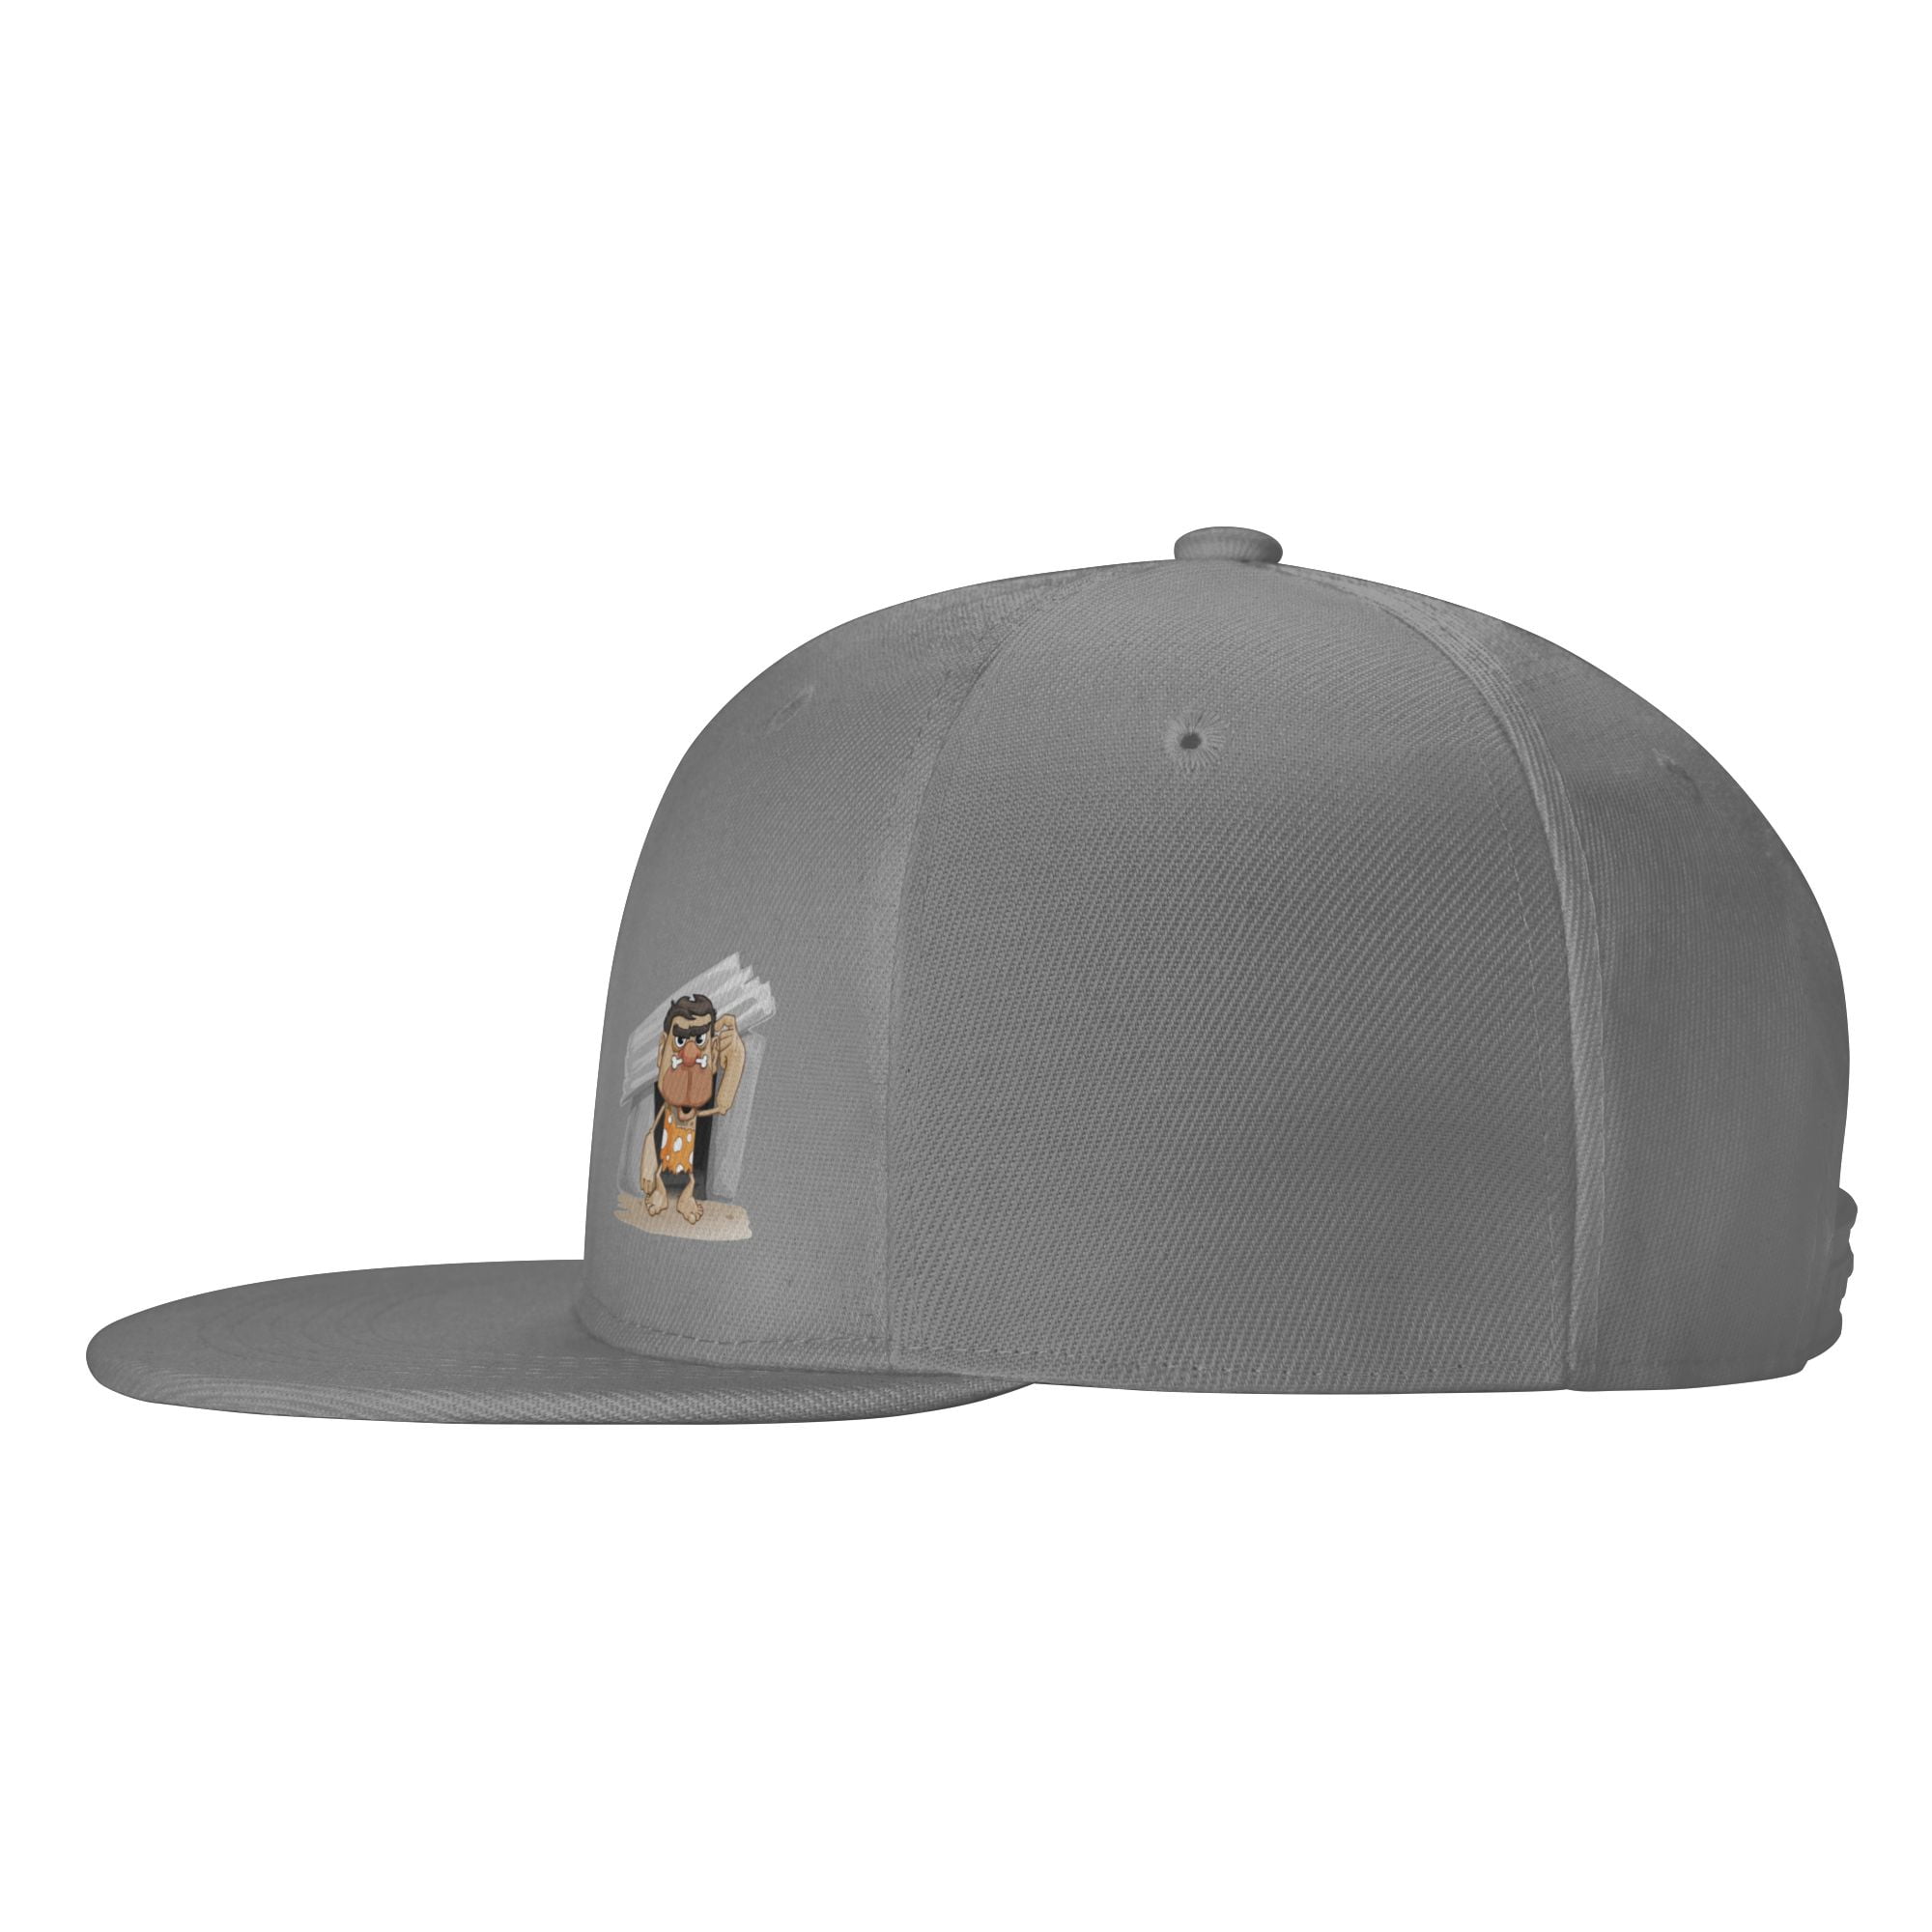 DouZhe Flat Brim Cap Snapback Hat, Big Head Caveman Prints Adjustable Blue  Adult Baseball Cap 